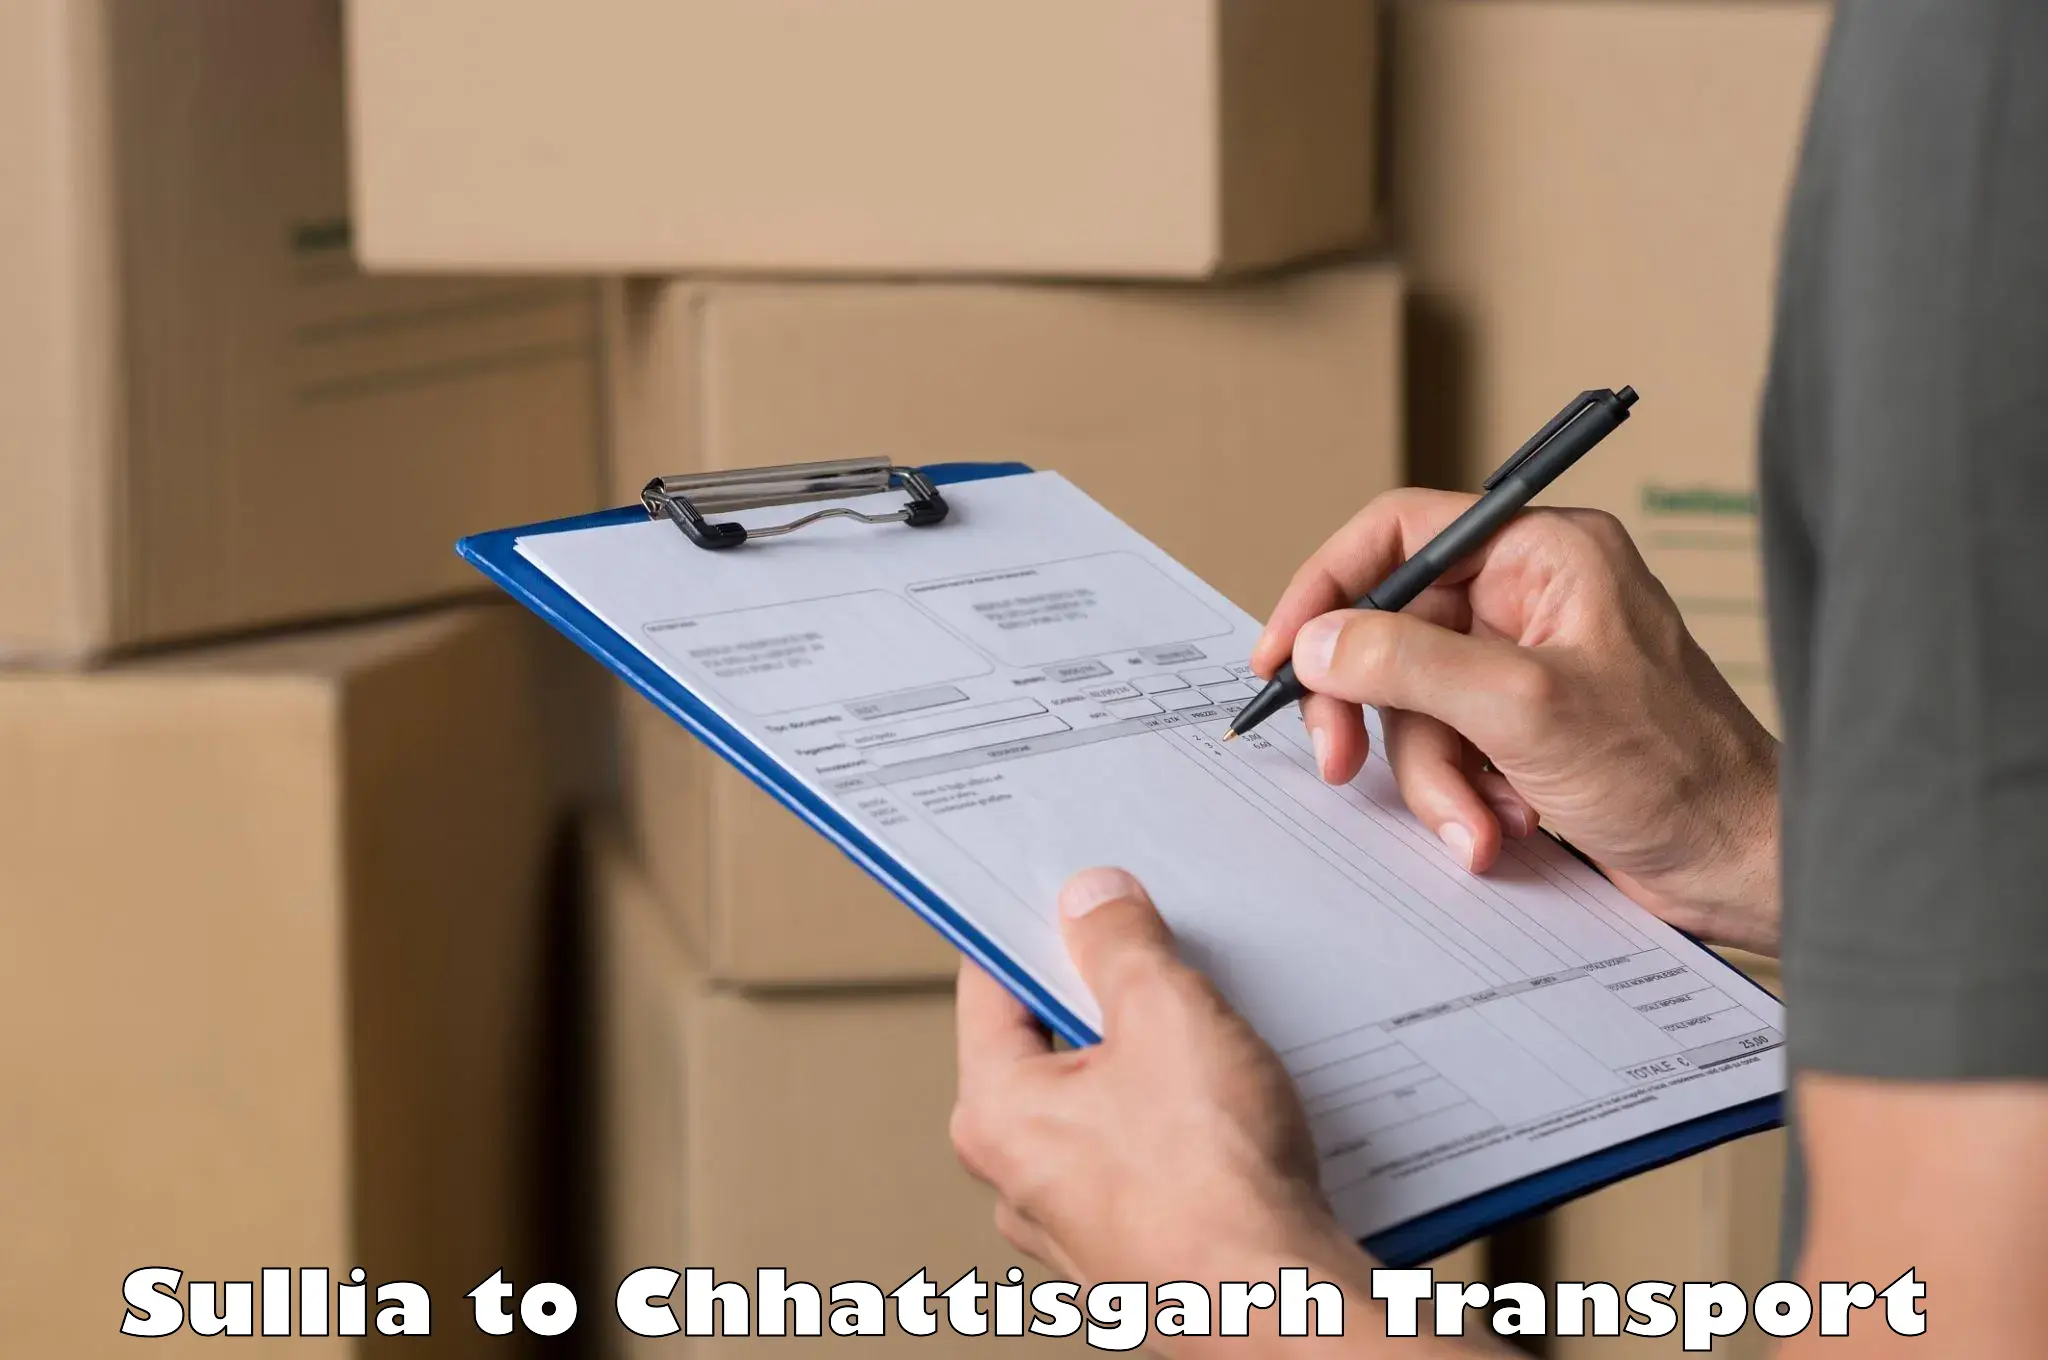 Bike shipping service Sullia to Patna Chhattisgarh